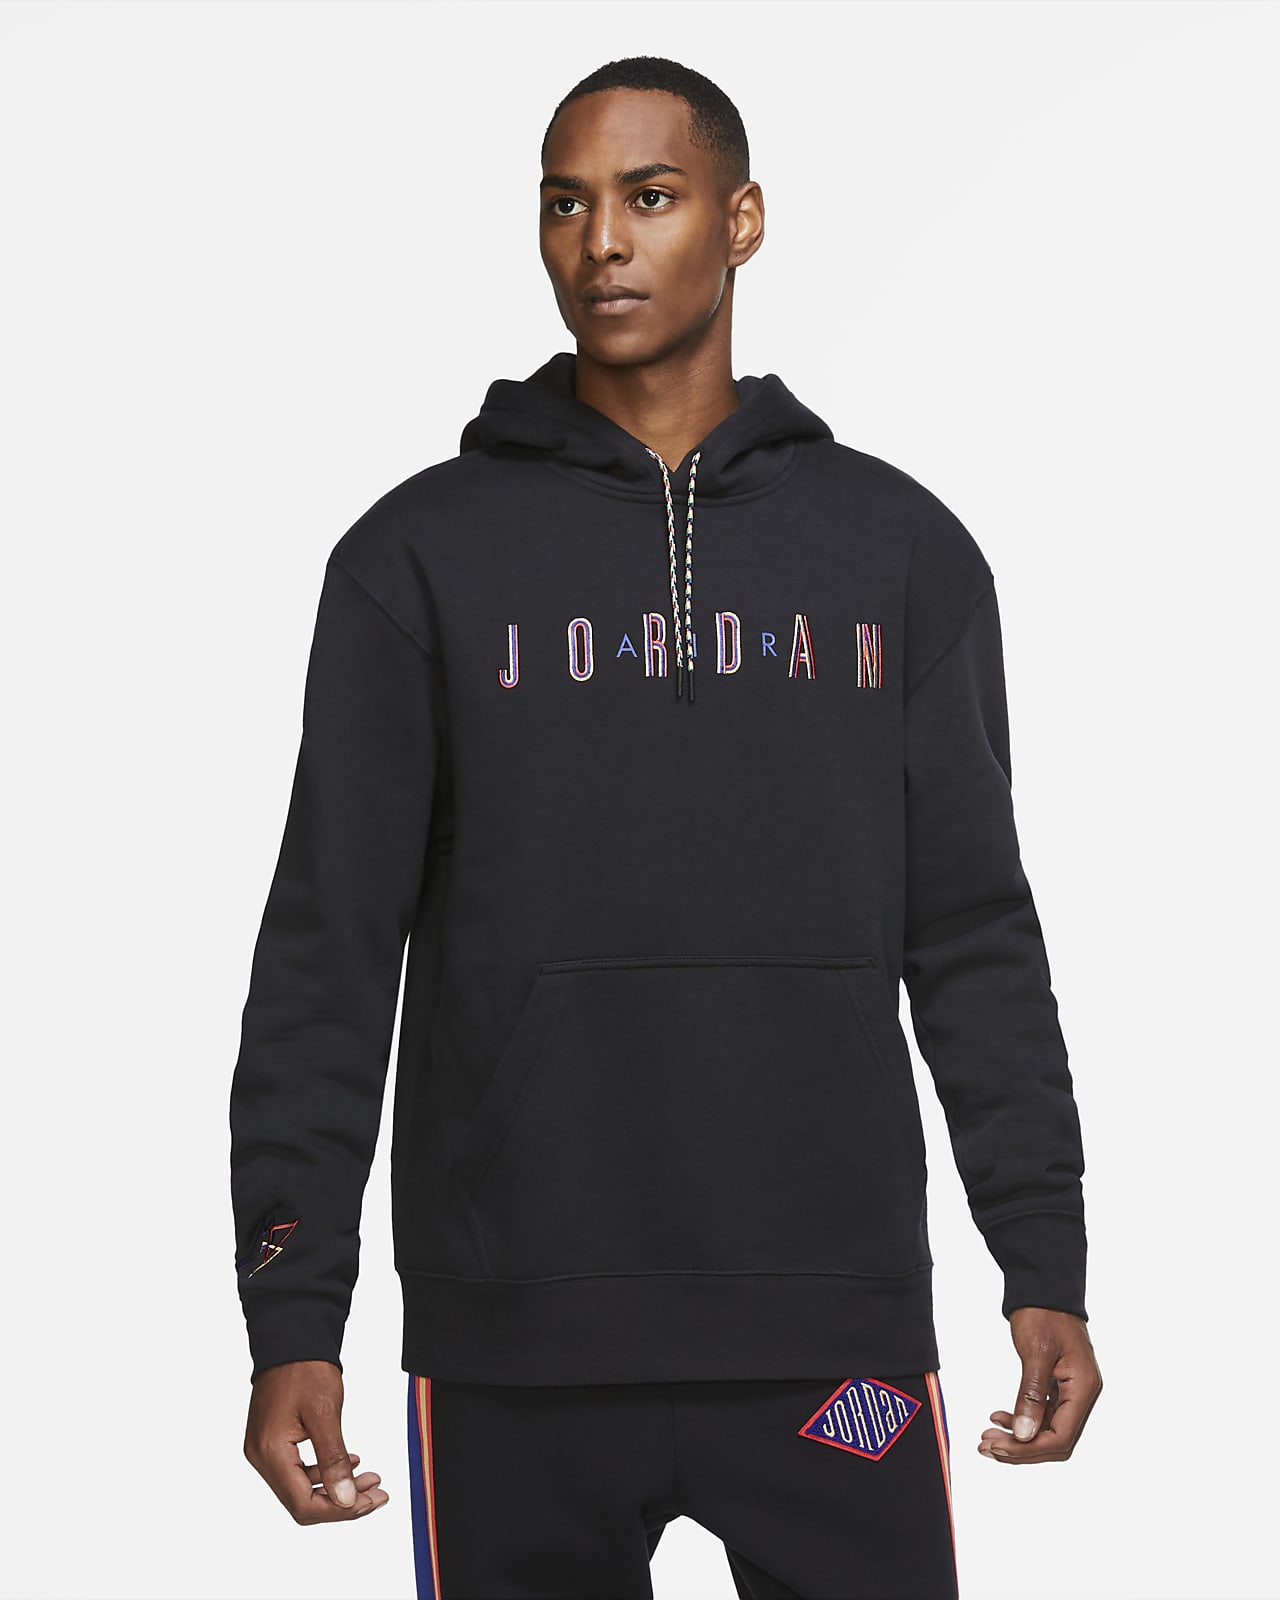 jordan fleece pullover hoodie